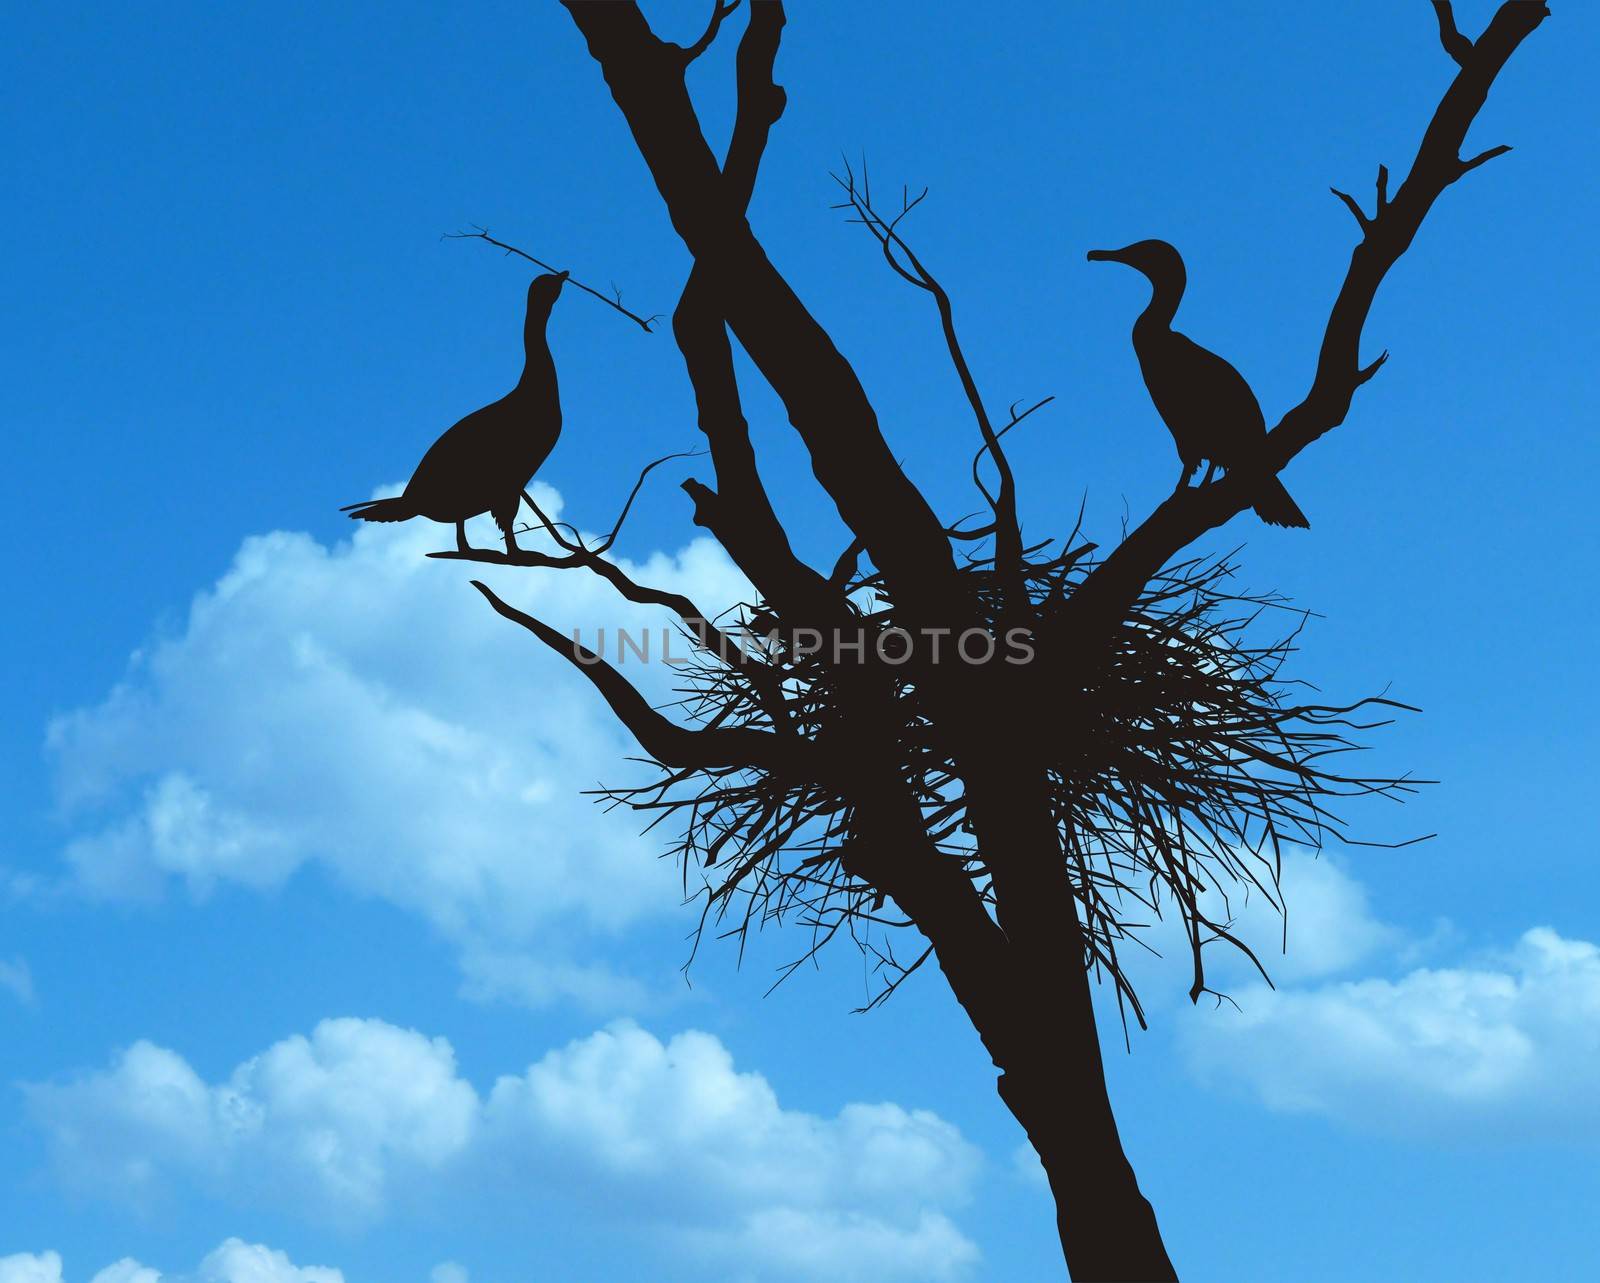 cormorants nest in the dry tree